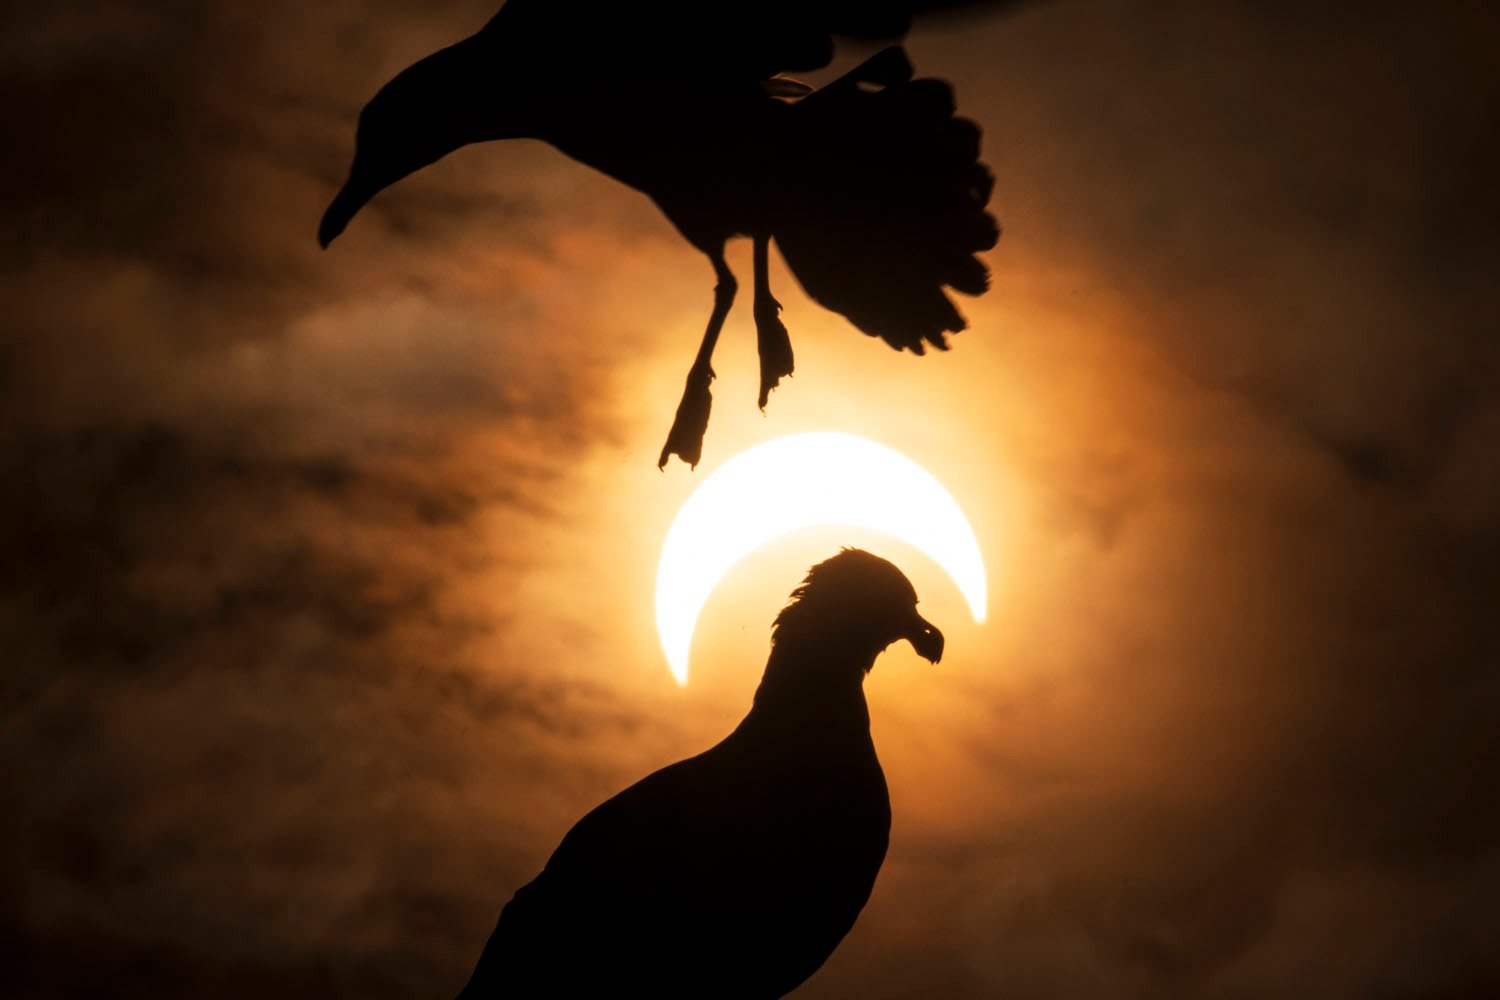 Siluetas de palomas en vuelo contra un espectacular eclipse solar, con una paloma parcialmente superpuesta al sol resplandeciente.